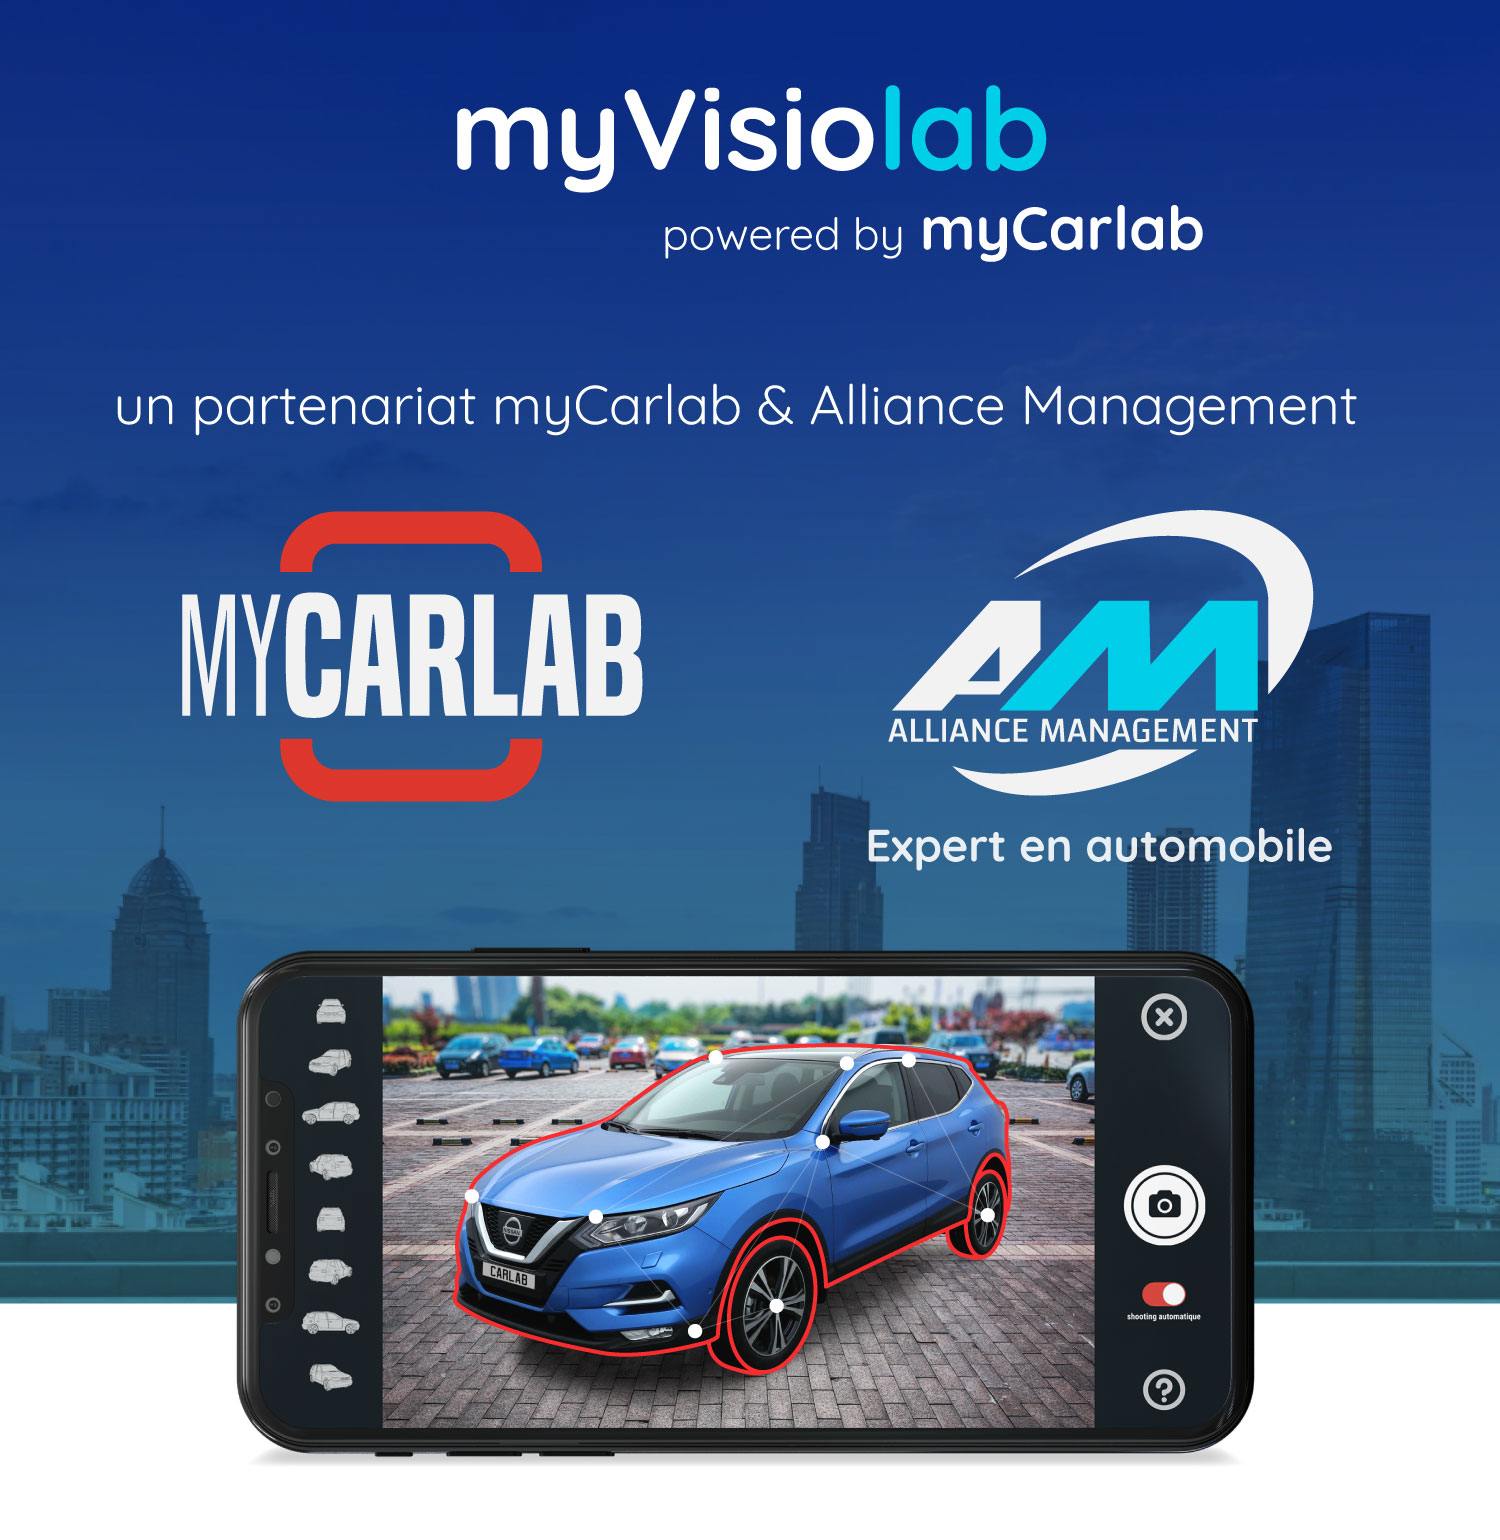 img myvisiolab mycarlab carlab alliance management scanner de degats